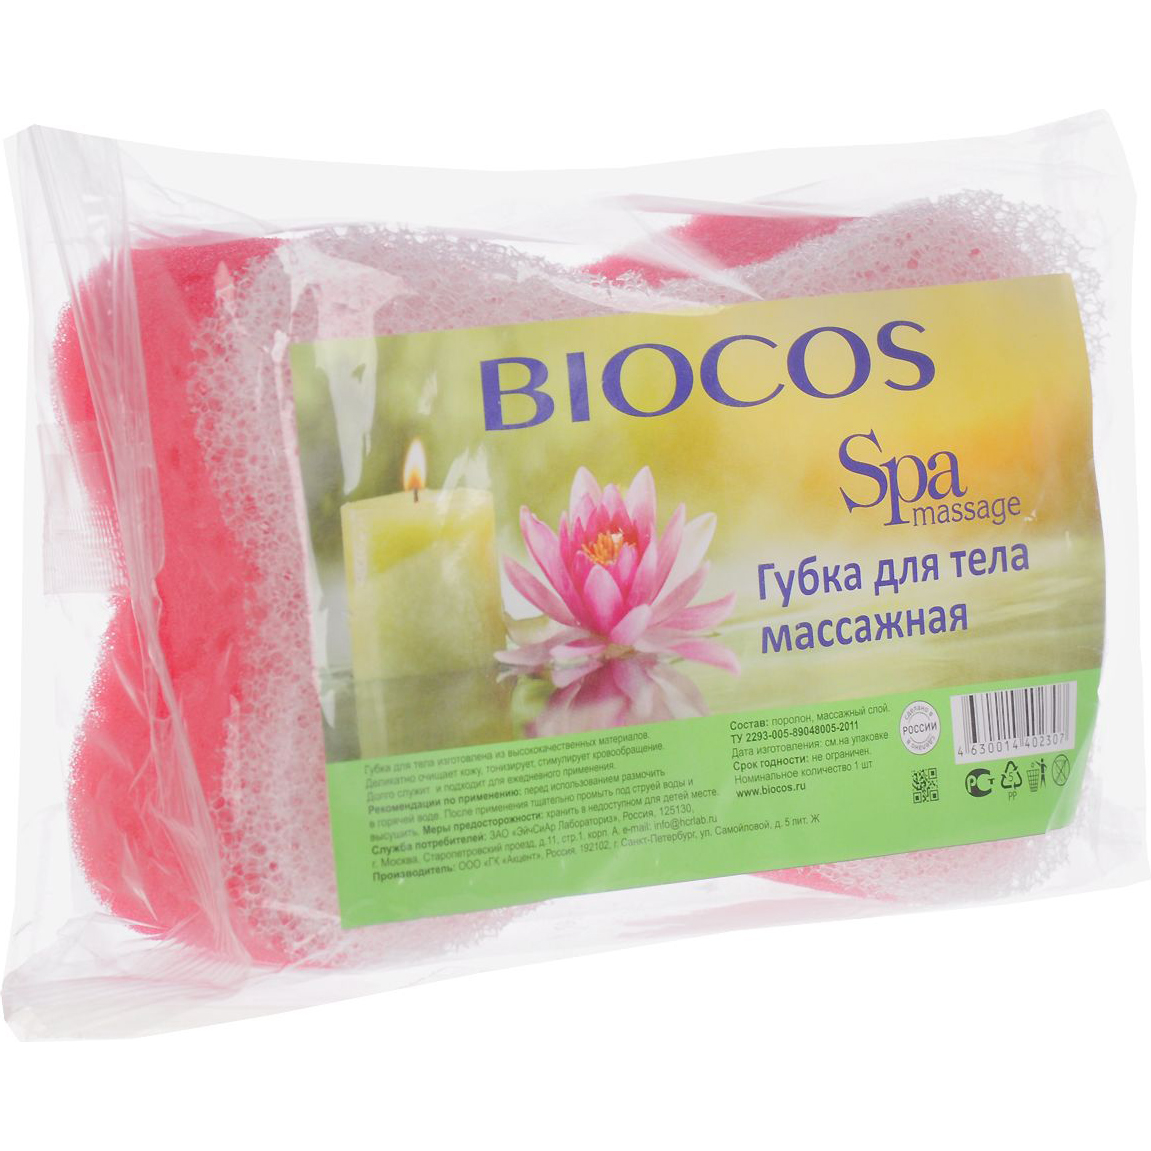 Губка для тела Biocos Spa massage Массажная